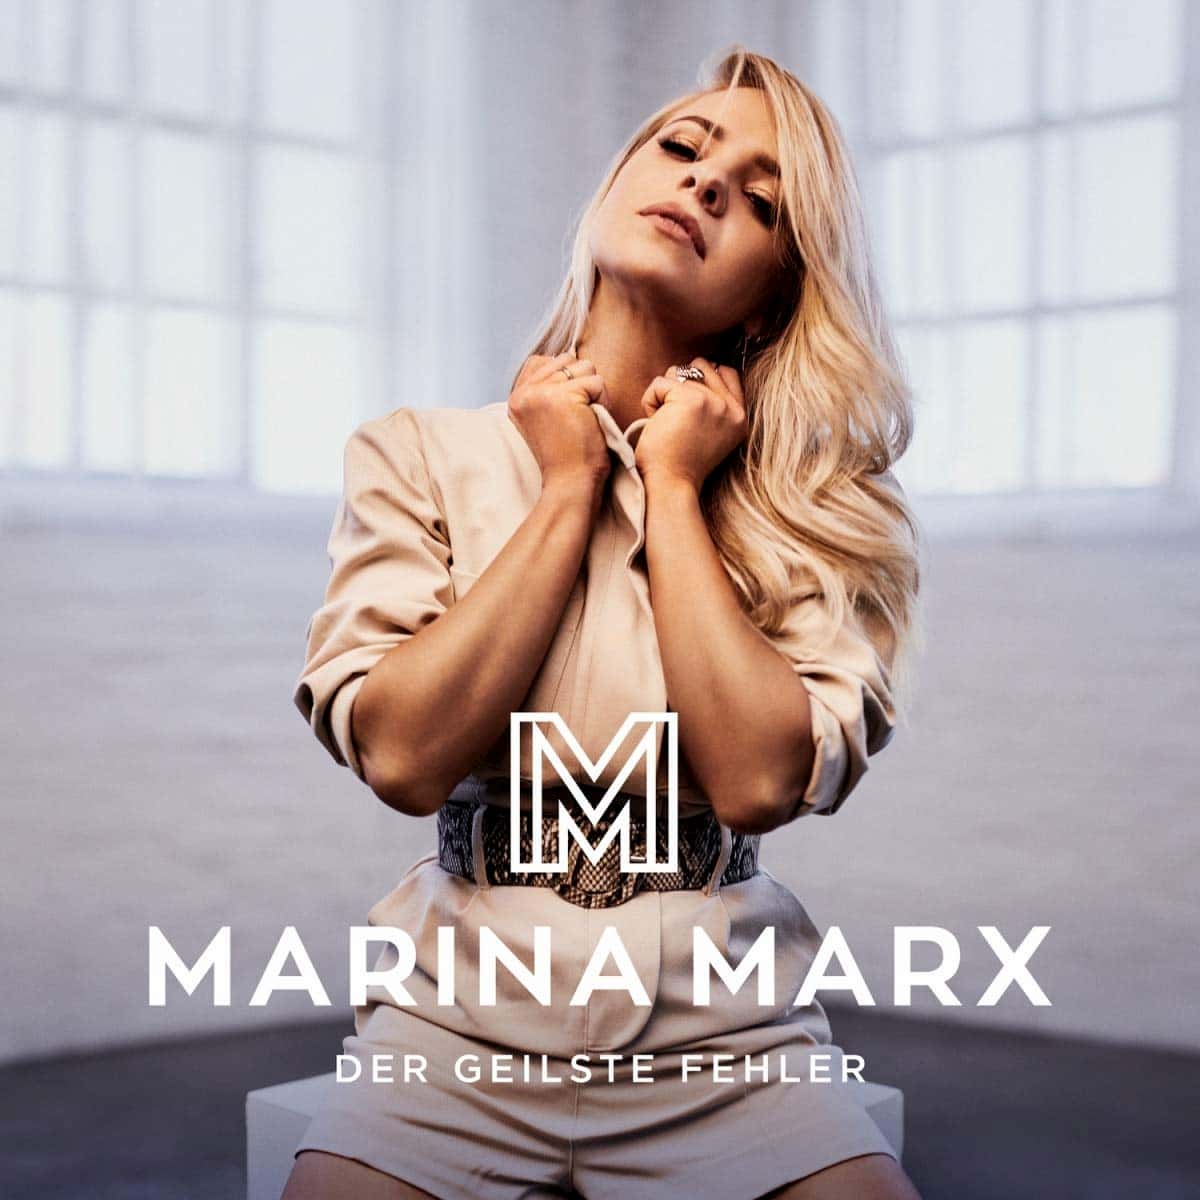 Marina Marx - Album "Der geilste Fehler" 2020